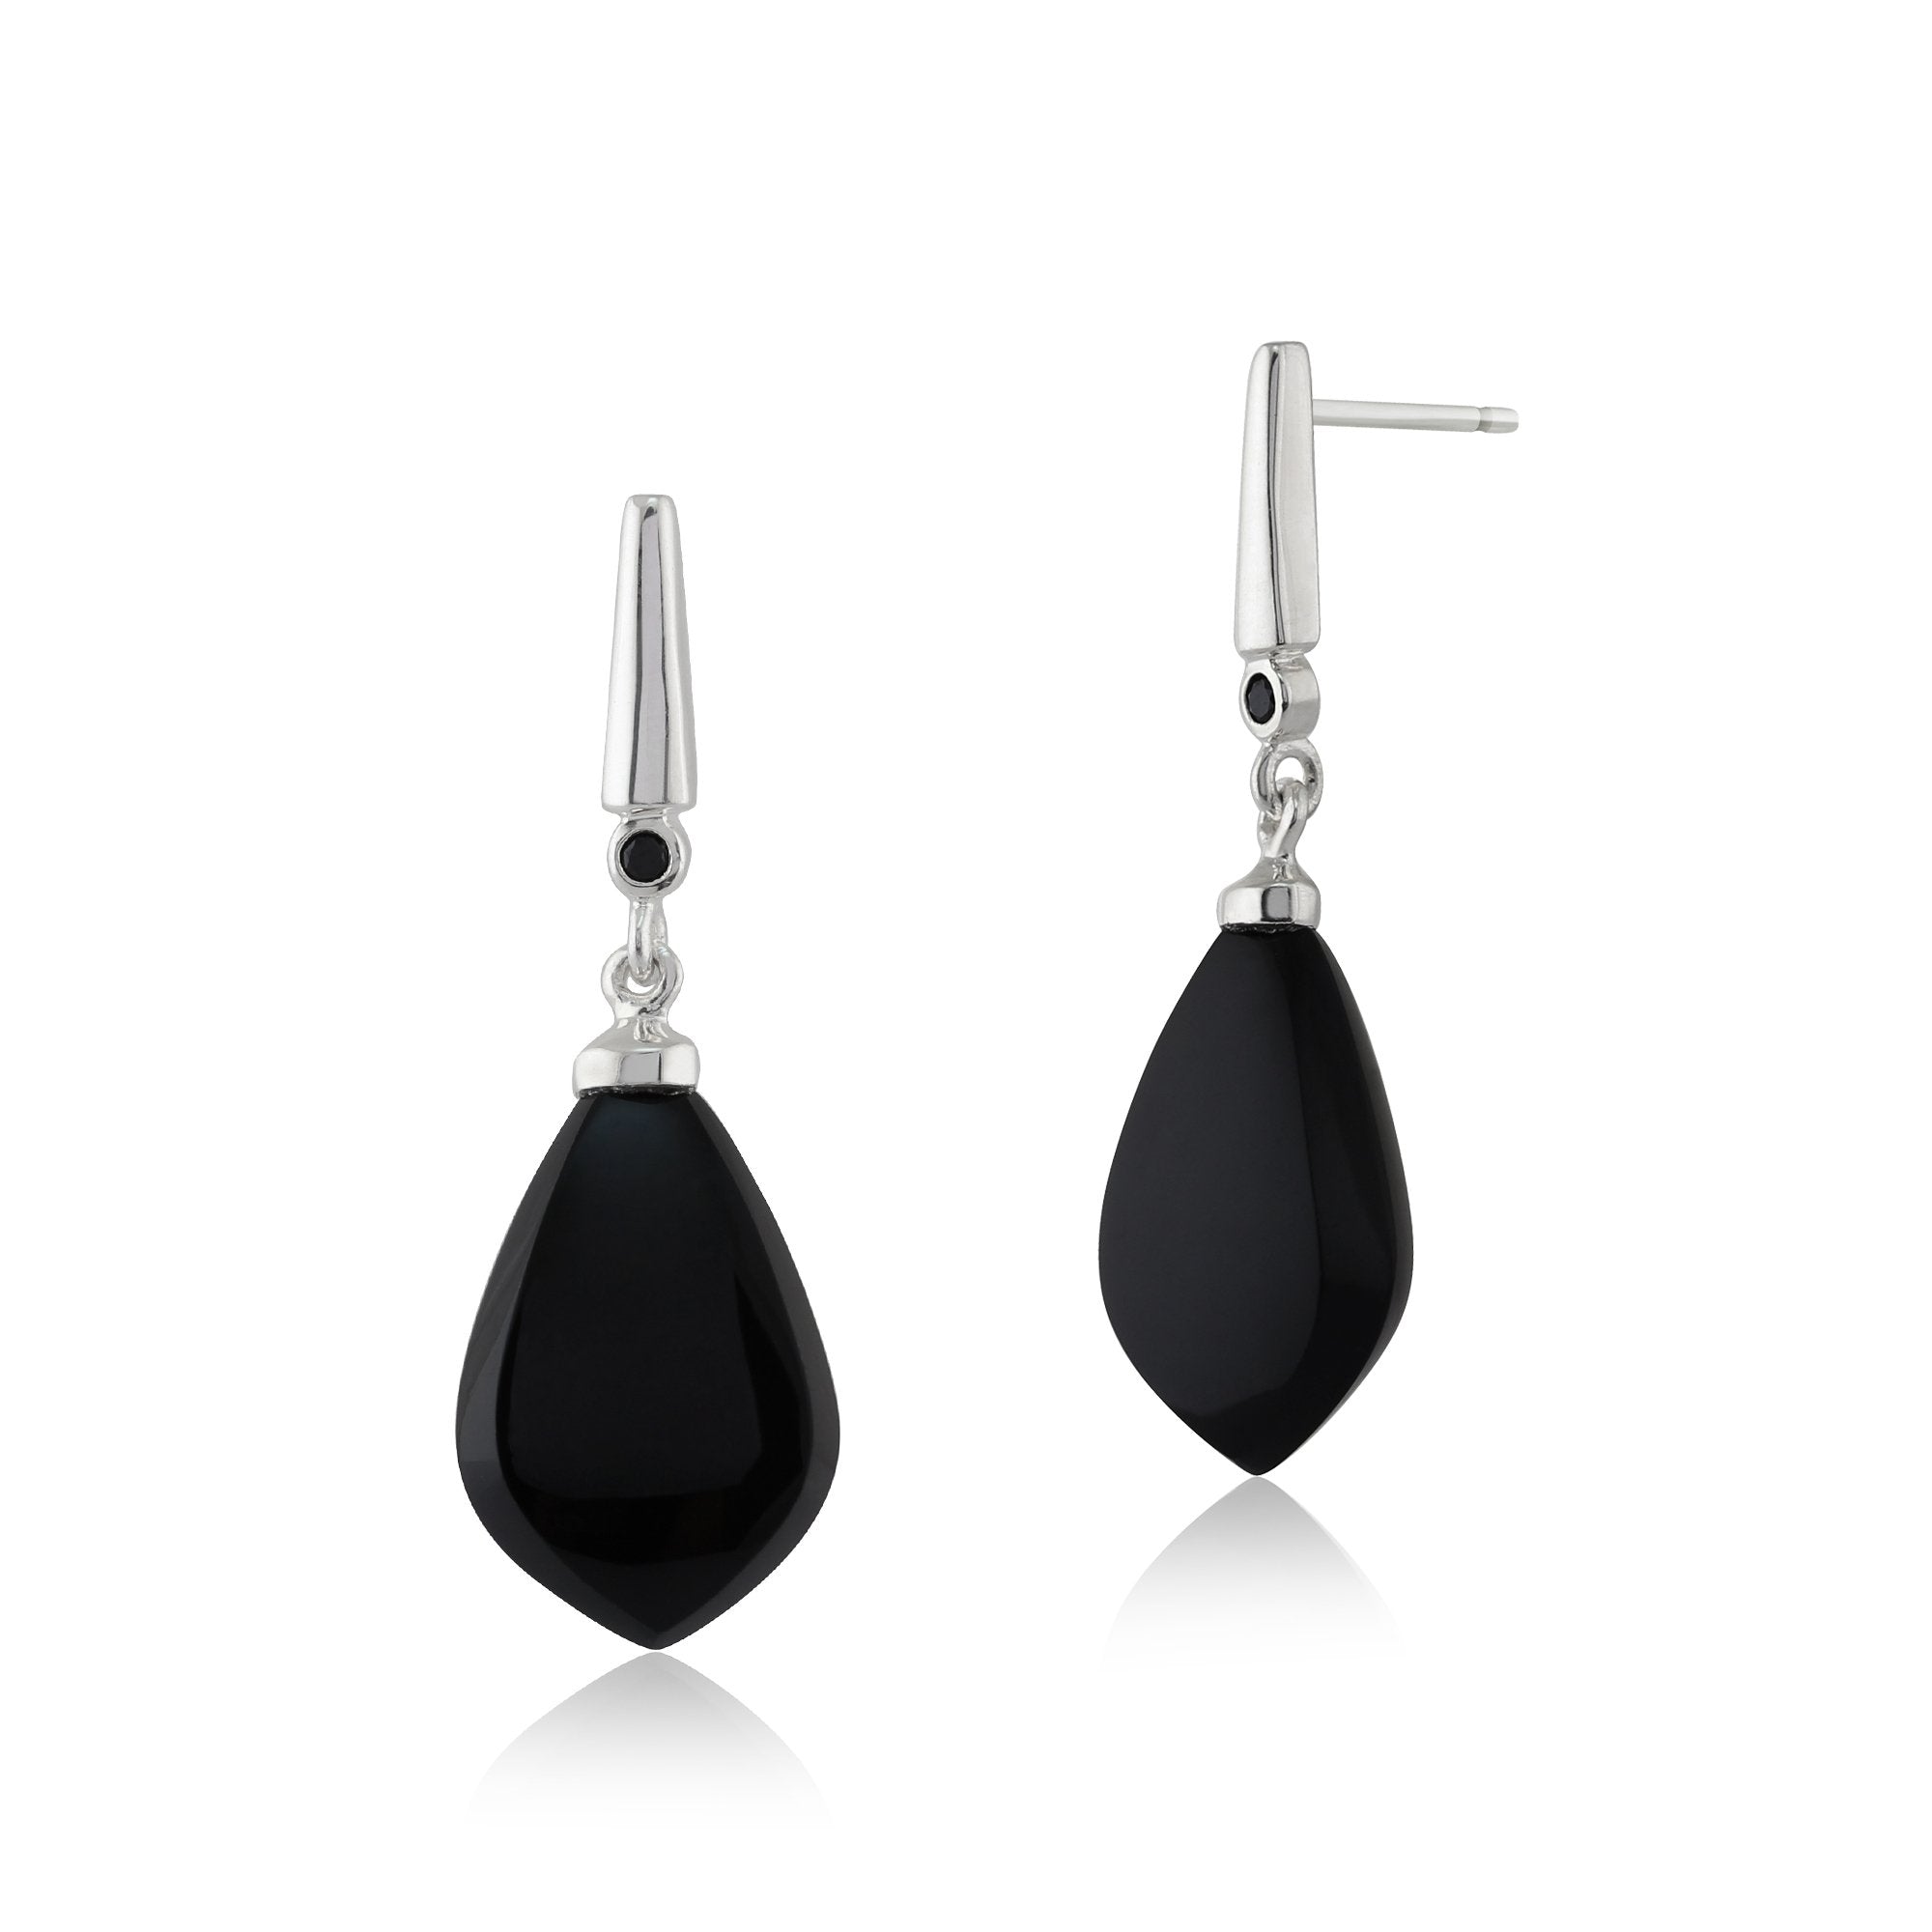 Art Deco Style Pear Black Onyx & Black Spinel Drop Earrings in 925 Sterling Silver